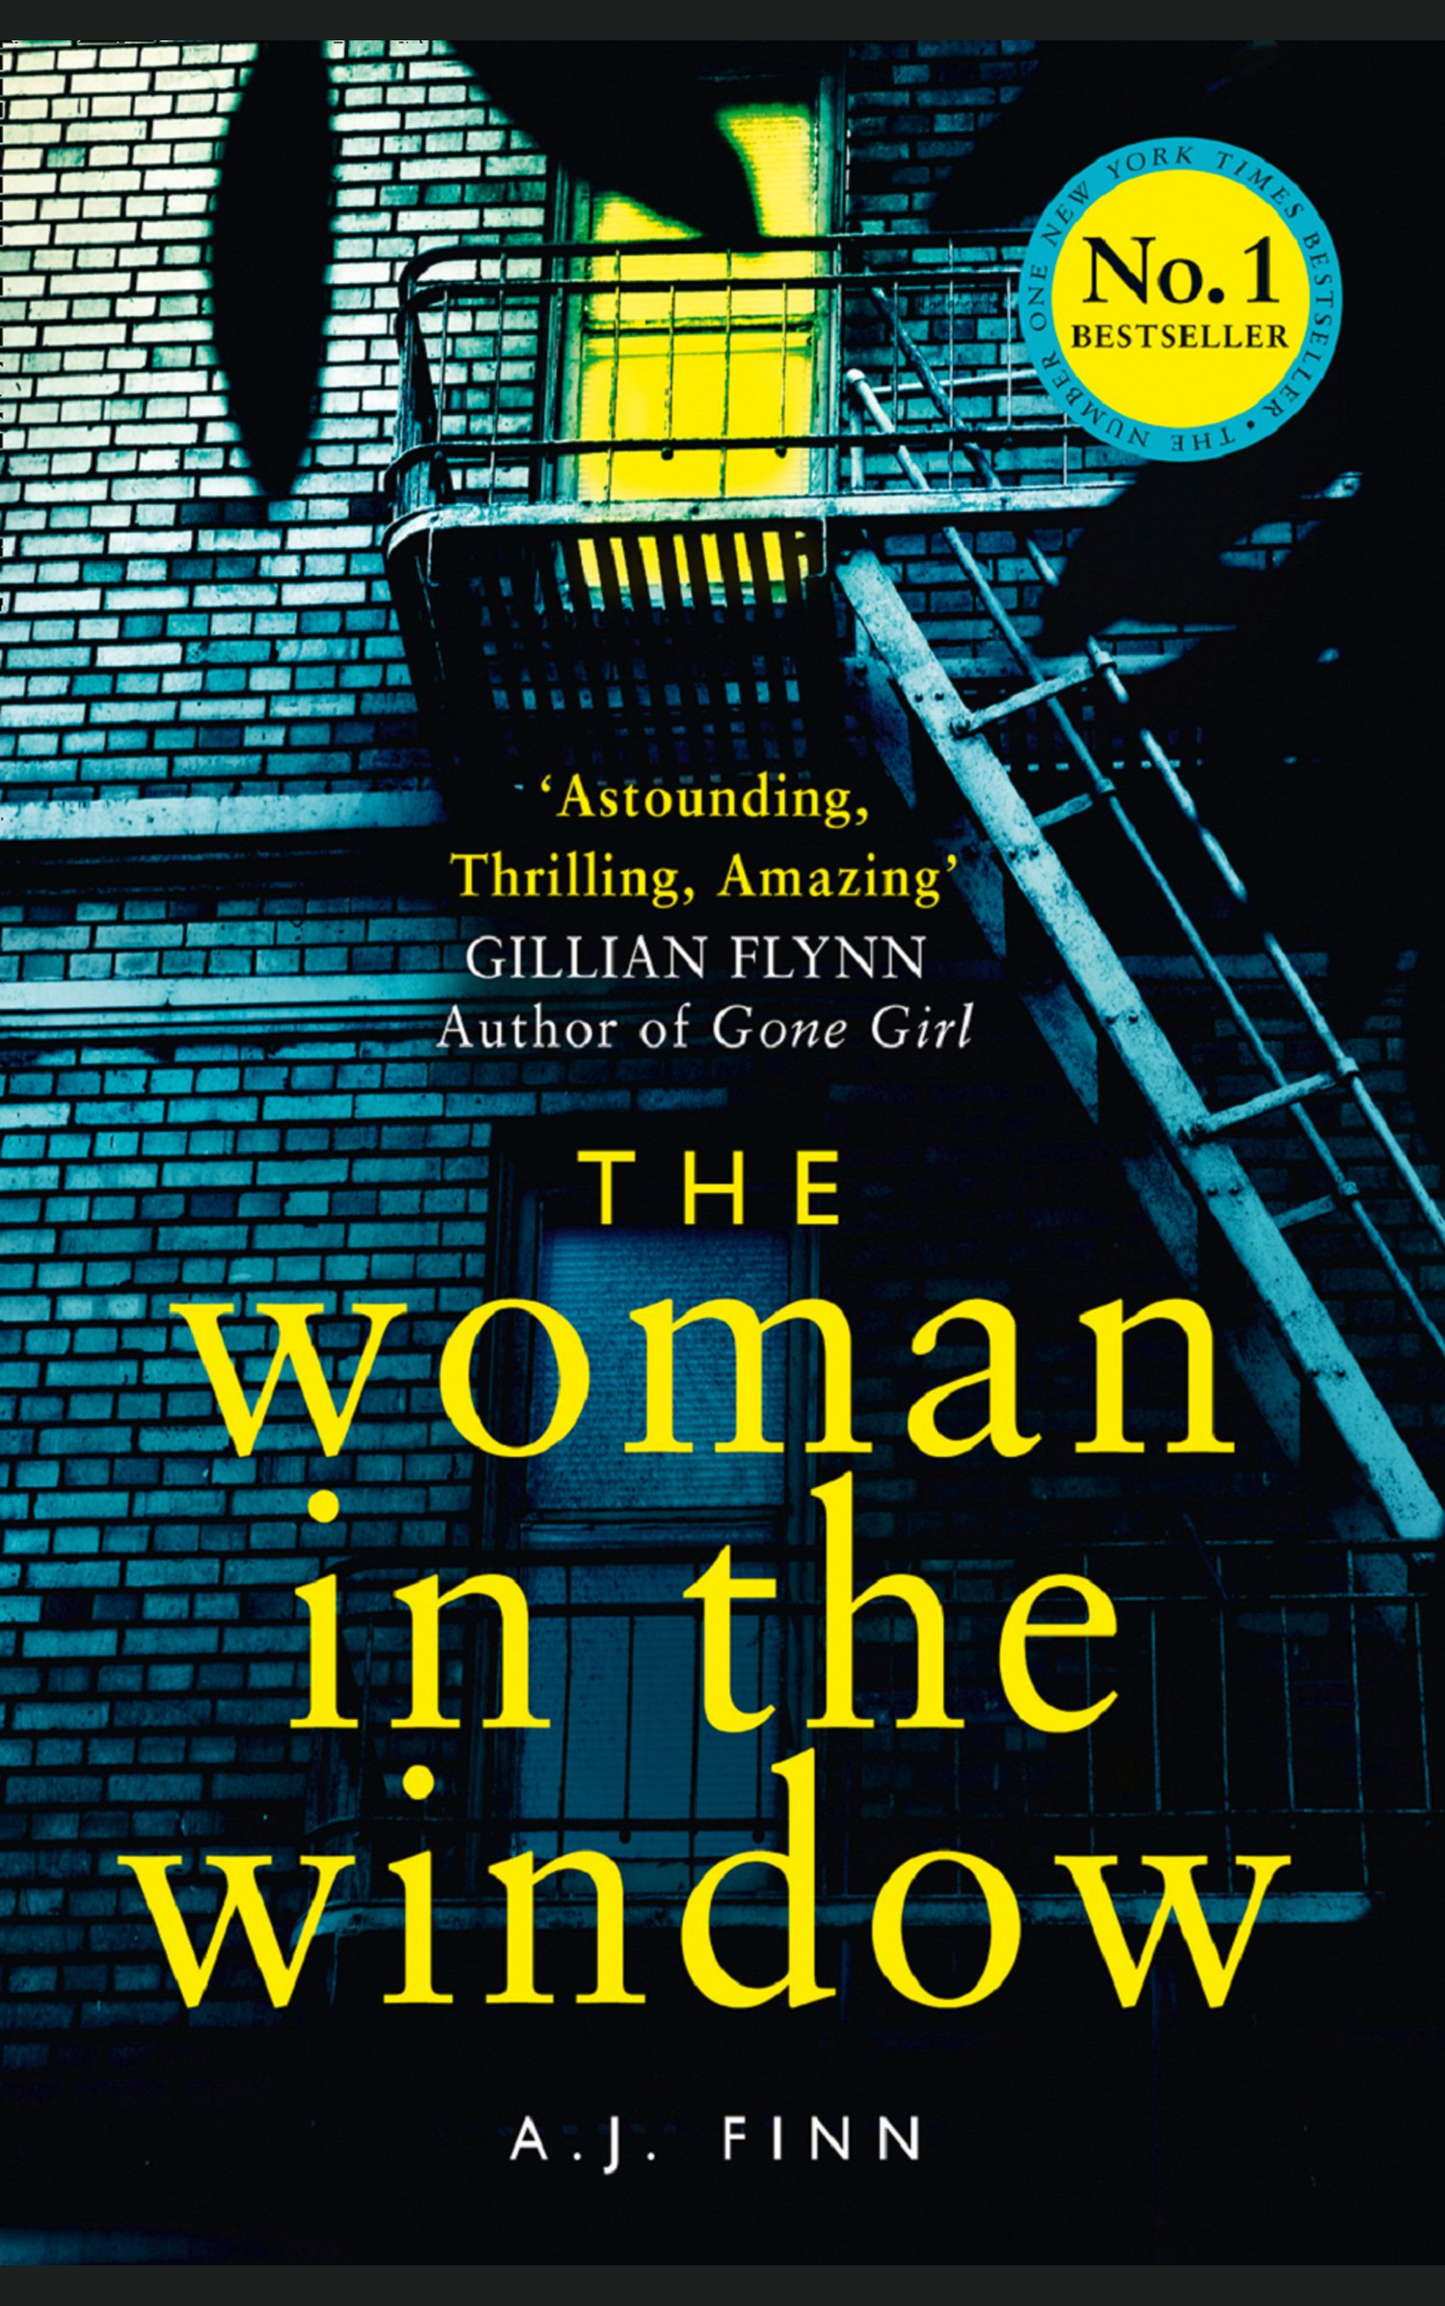 THE WOMAN IN THE WINDOW by AJ FINN